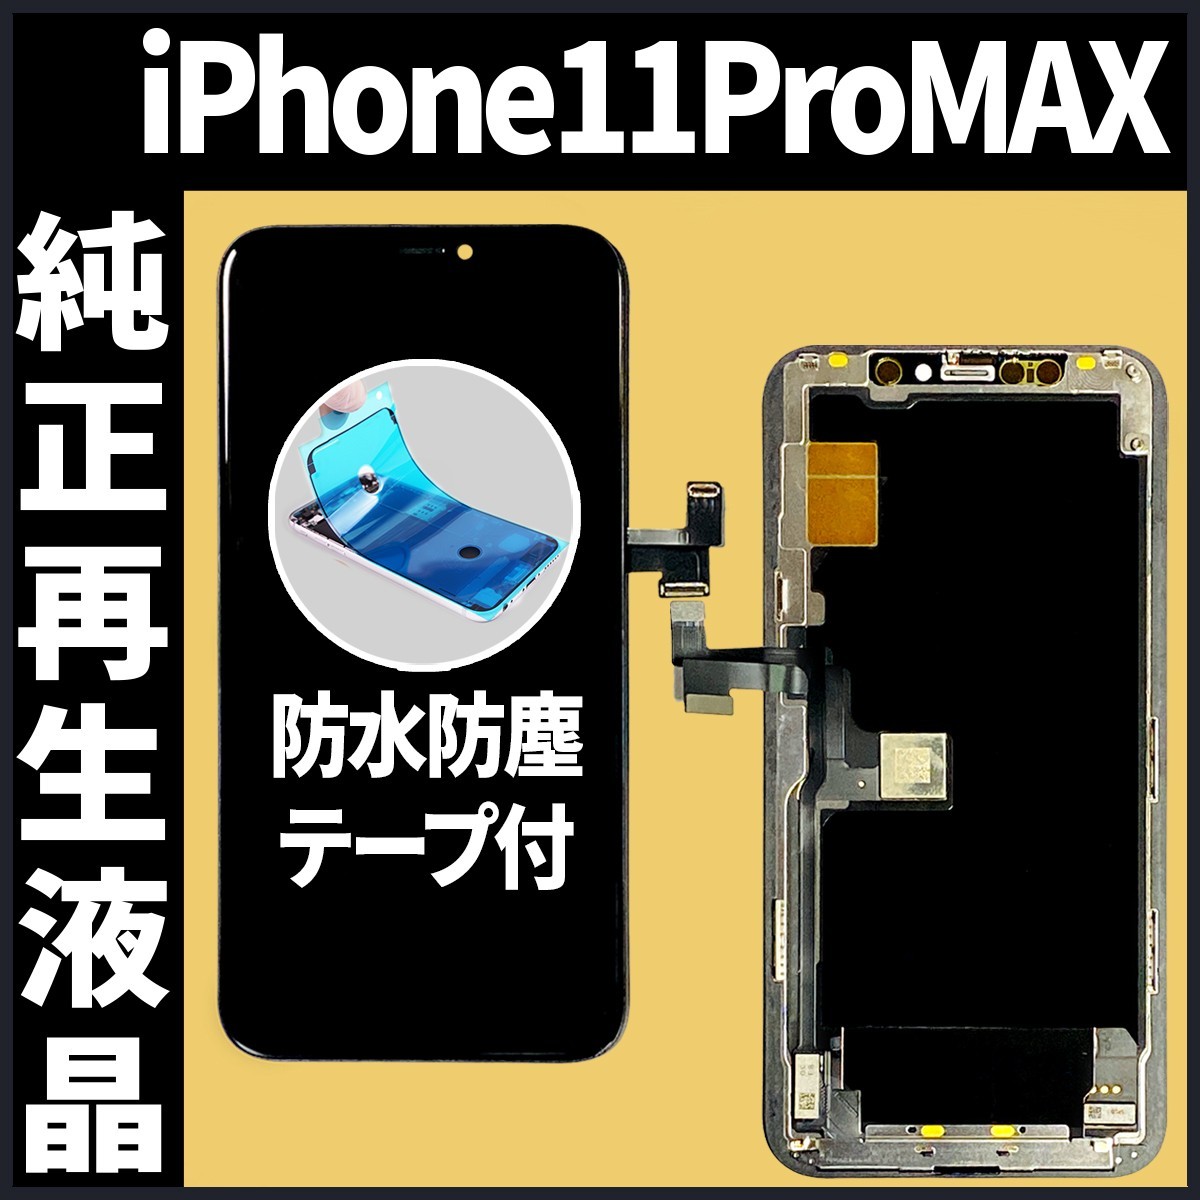 素晴らしい価格 iPhone11ProMax フロントパネル 純正再生品 防水テープ